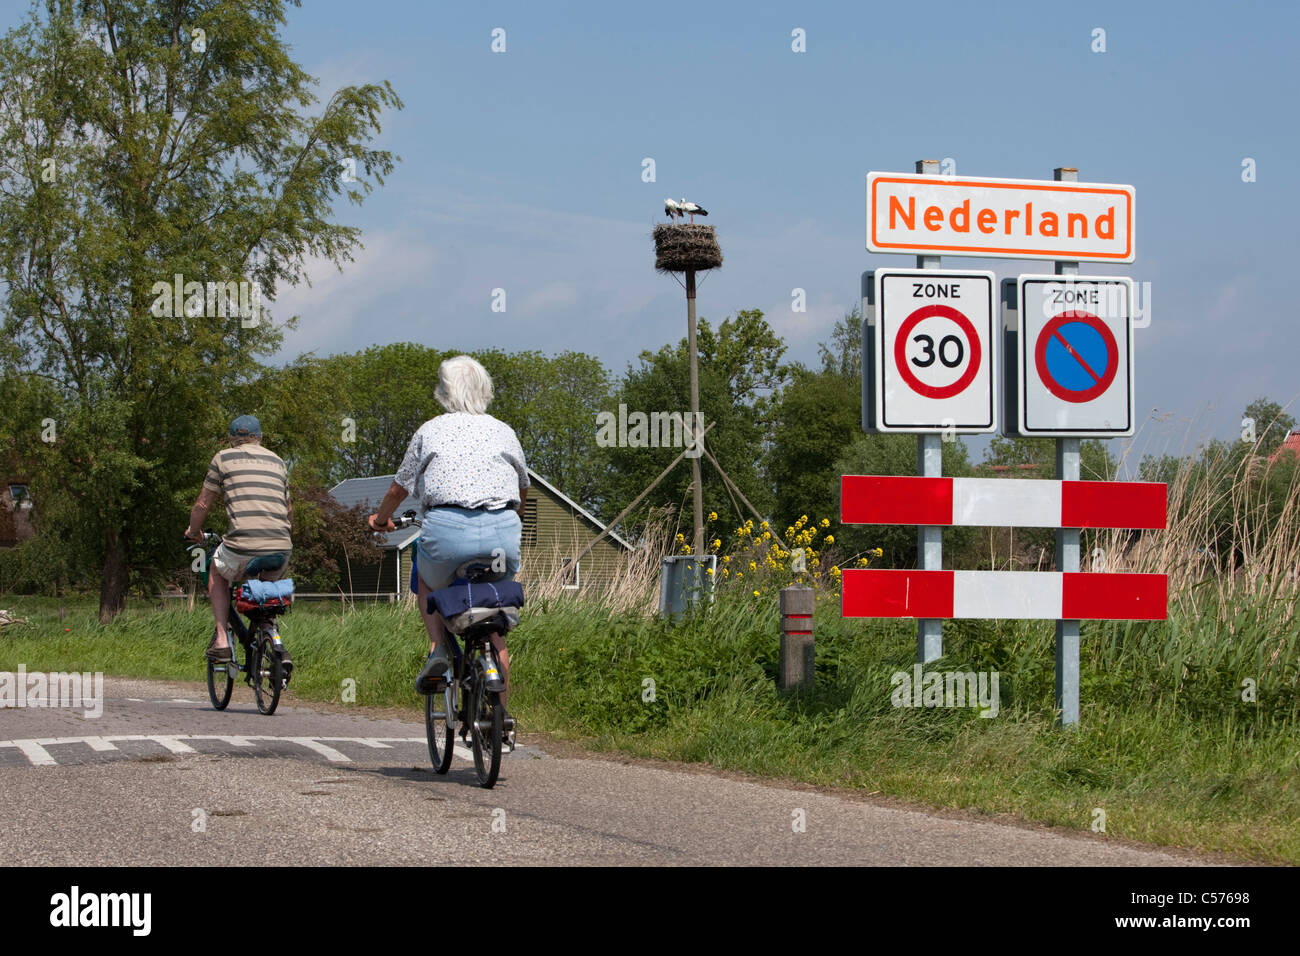 Niederlande, Nederland, Dorf namens Nederland, d.h. Niederlande in niederländischer Sprache. Älteres paar Radfahren. Stockfoto